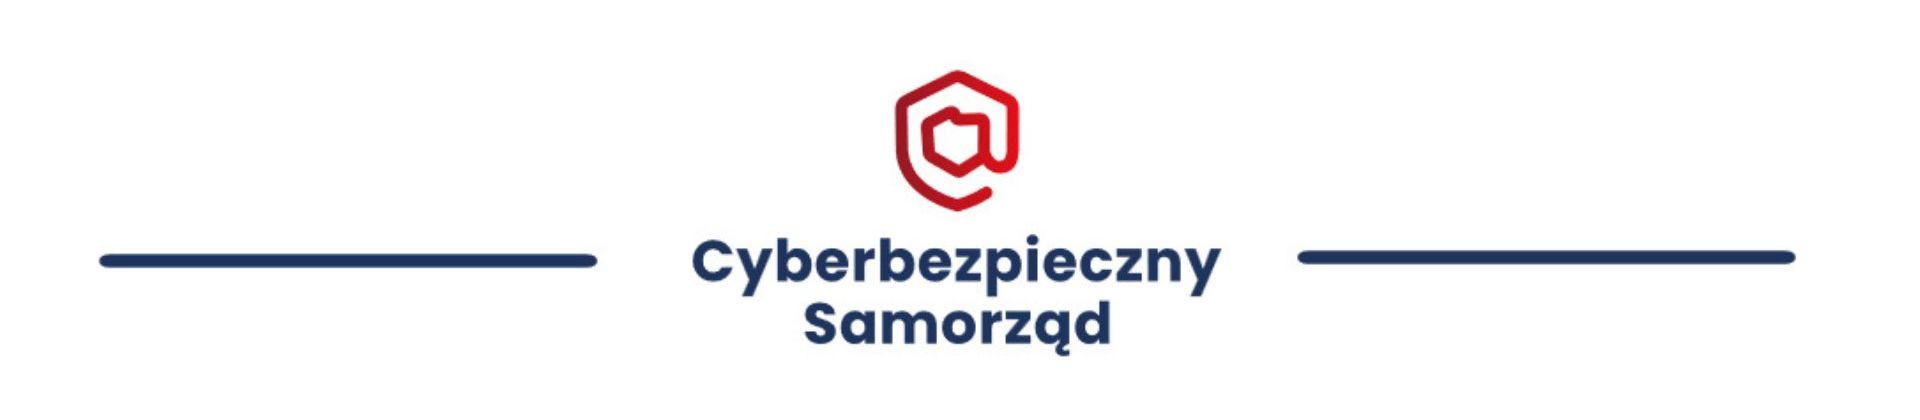 cyberbezpieczny-samorzad-logo